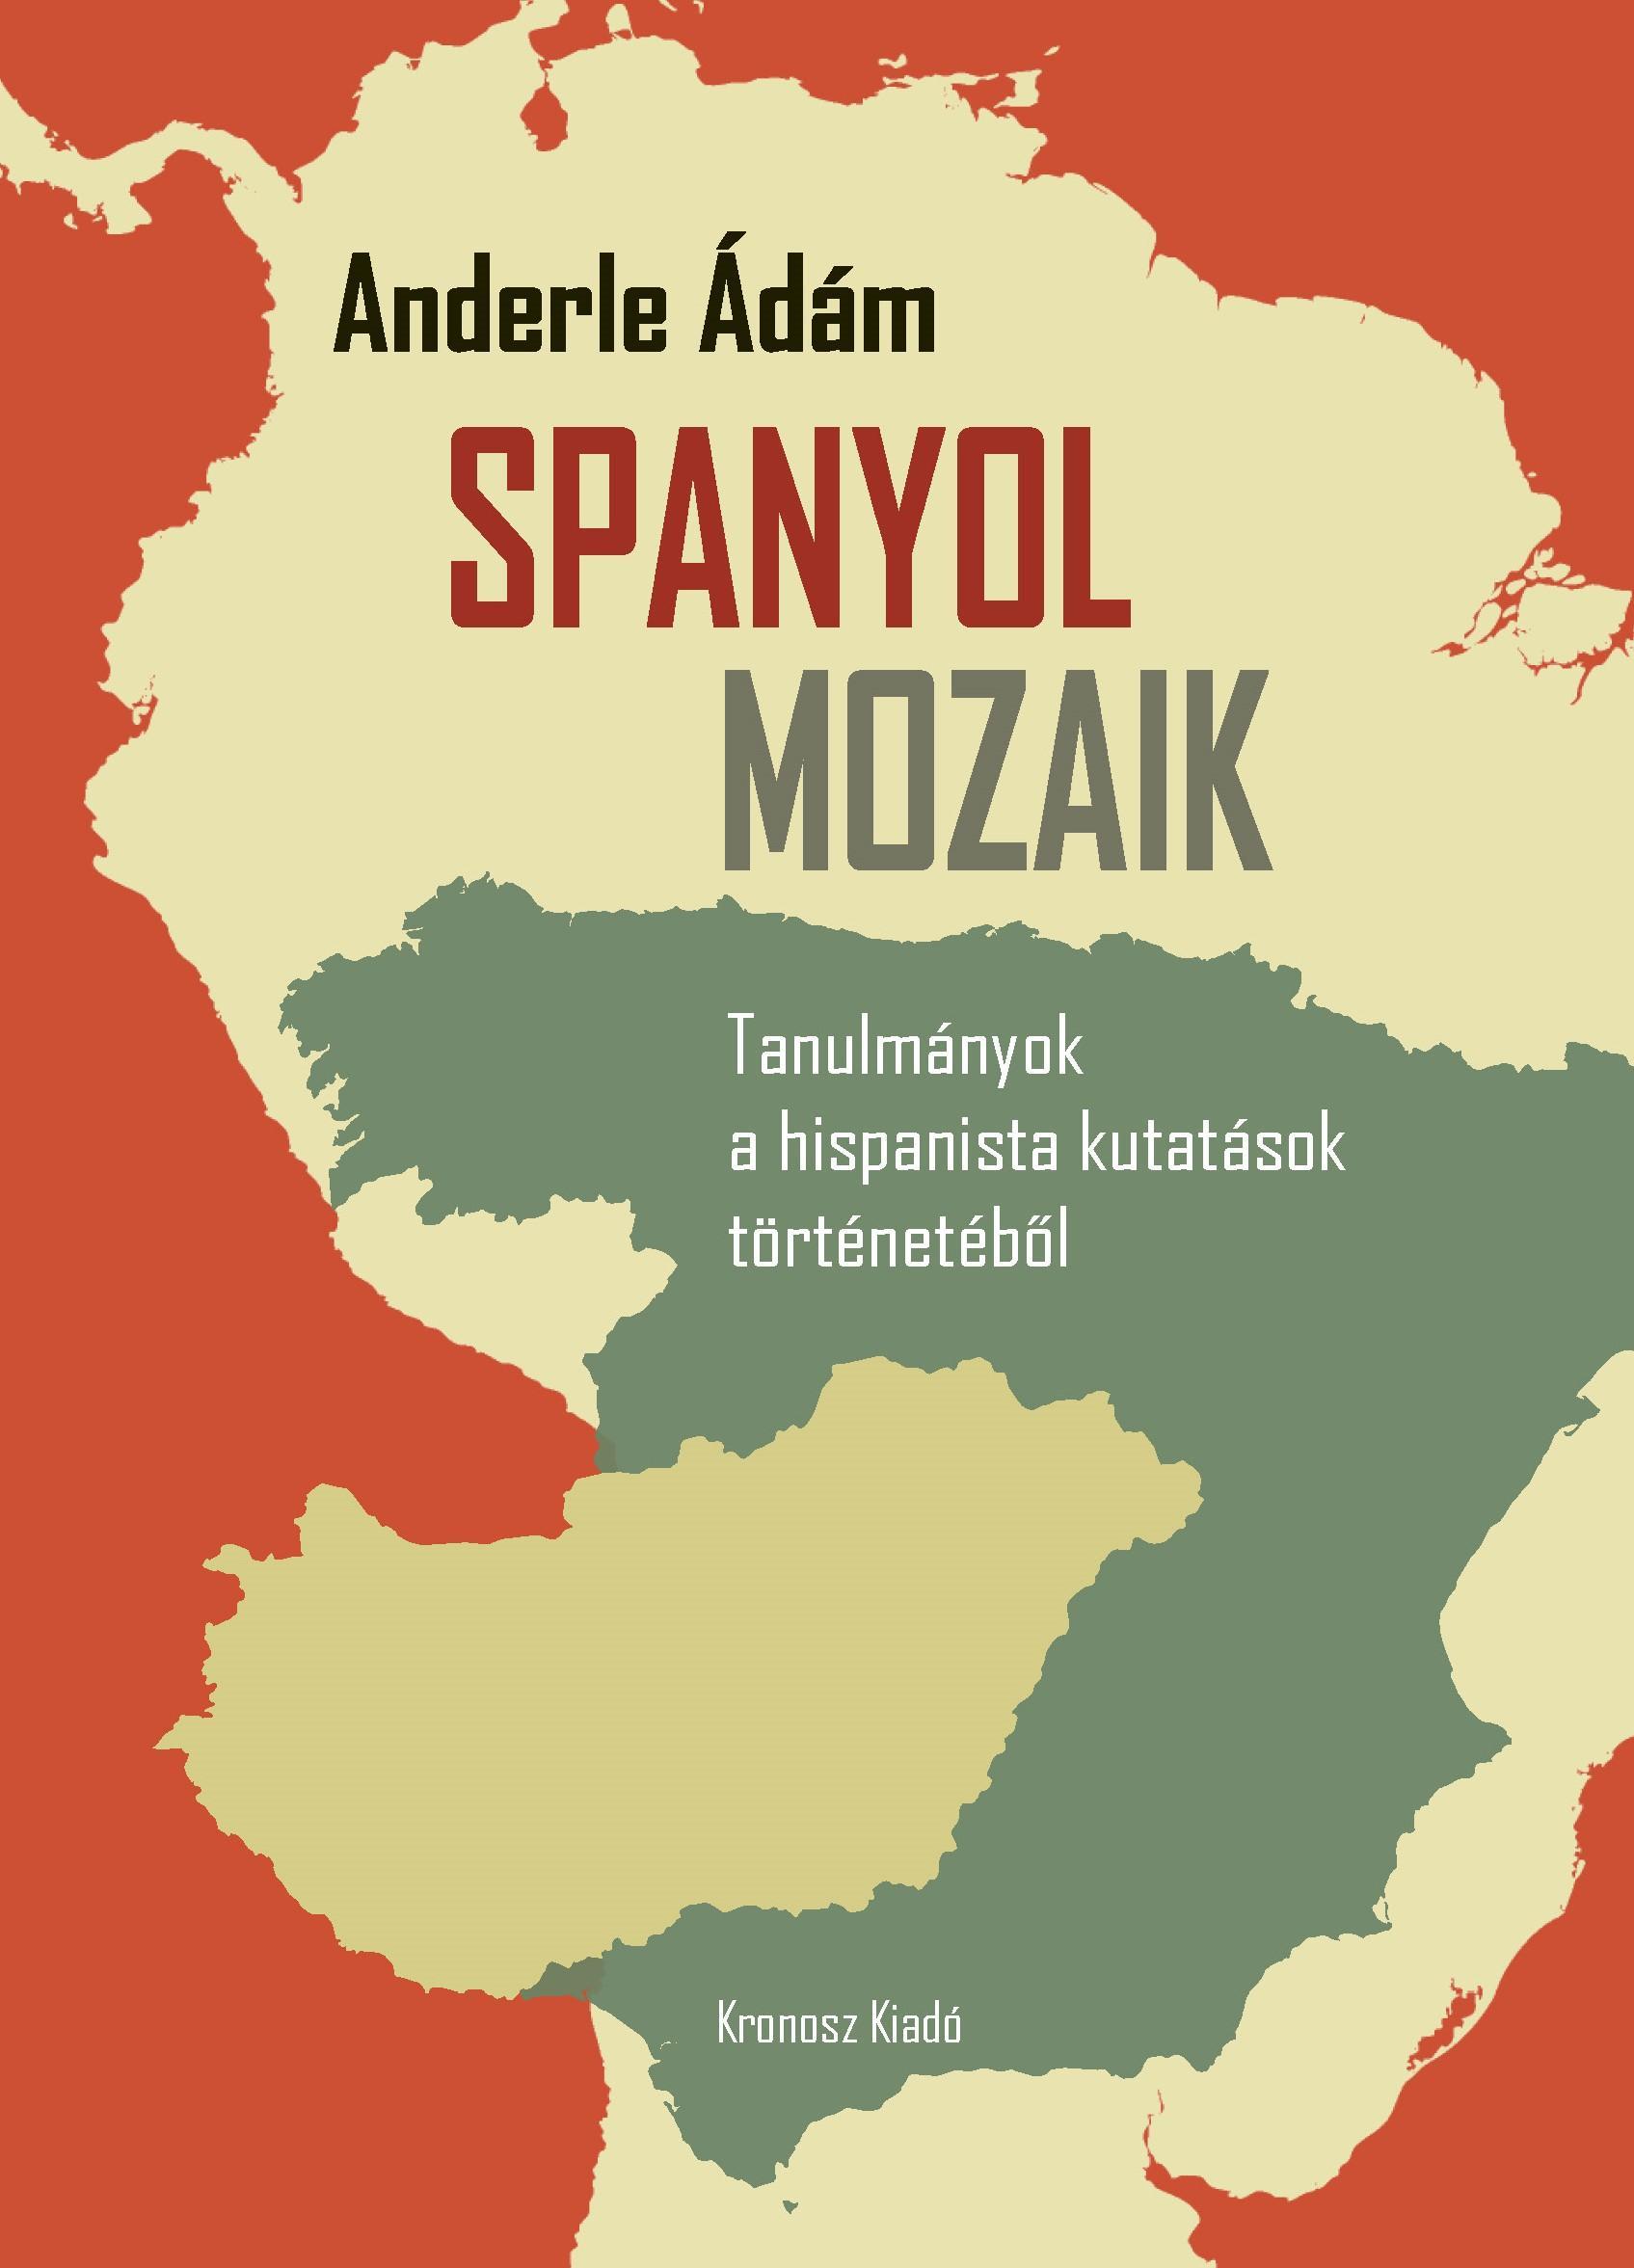 SPANYOL MOZAIK - TANULMÁNYOK A HISPANISTA KUTATÁSOK TÖRTÉNETÉBŐL